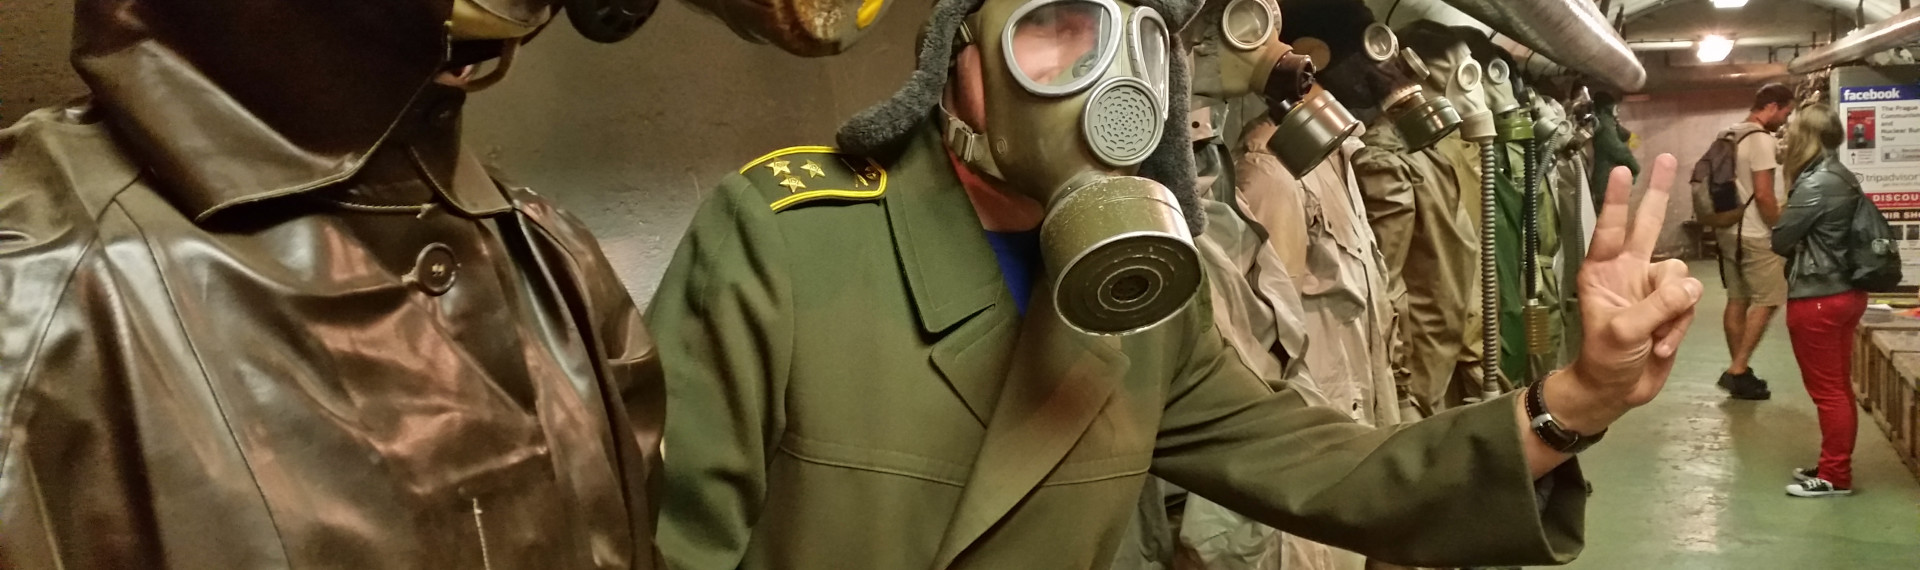 Visite d’un bunker anti-atomique 